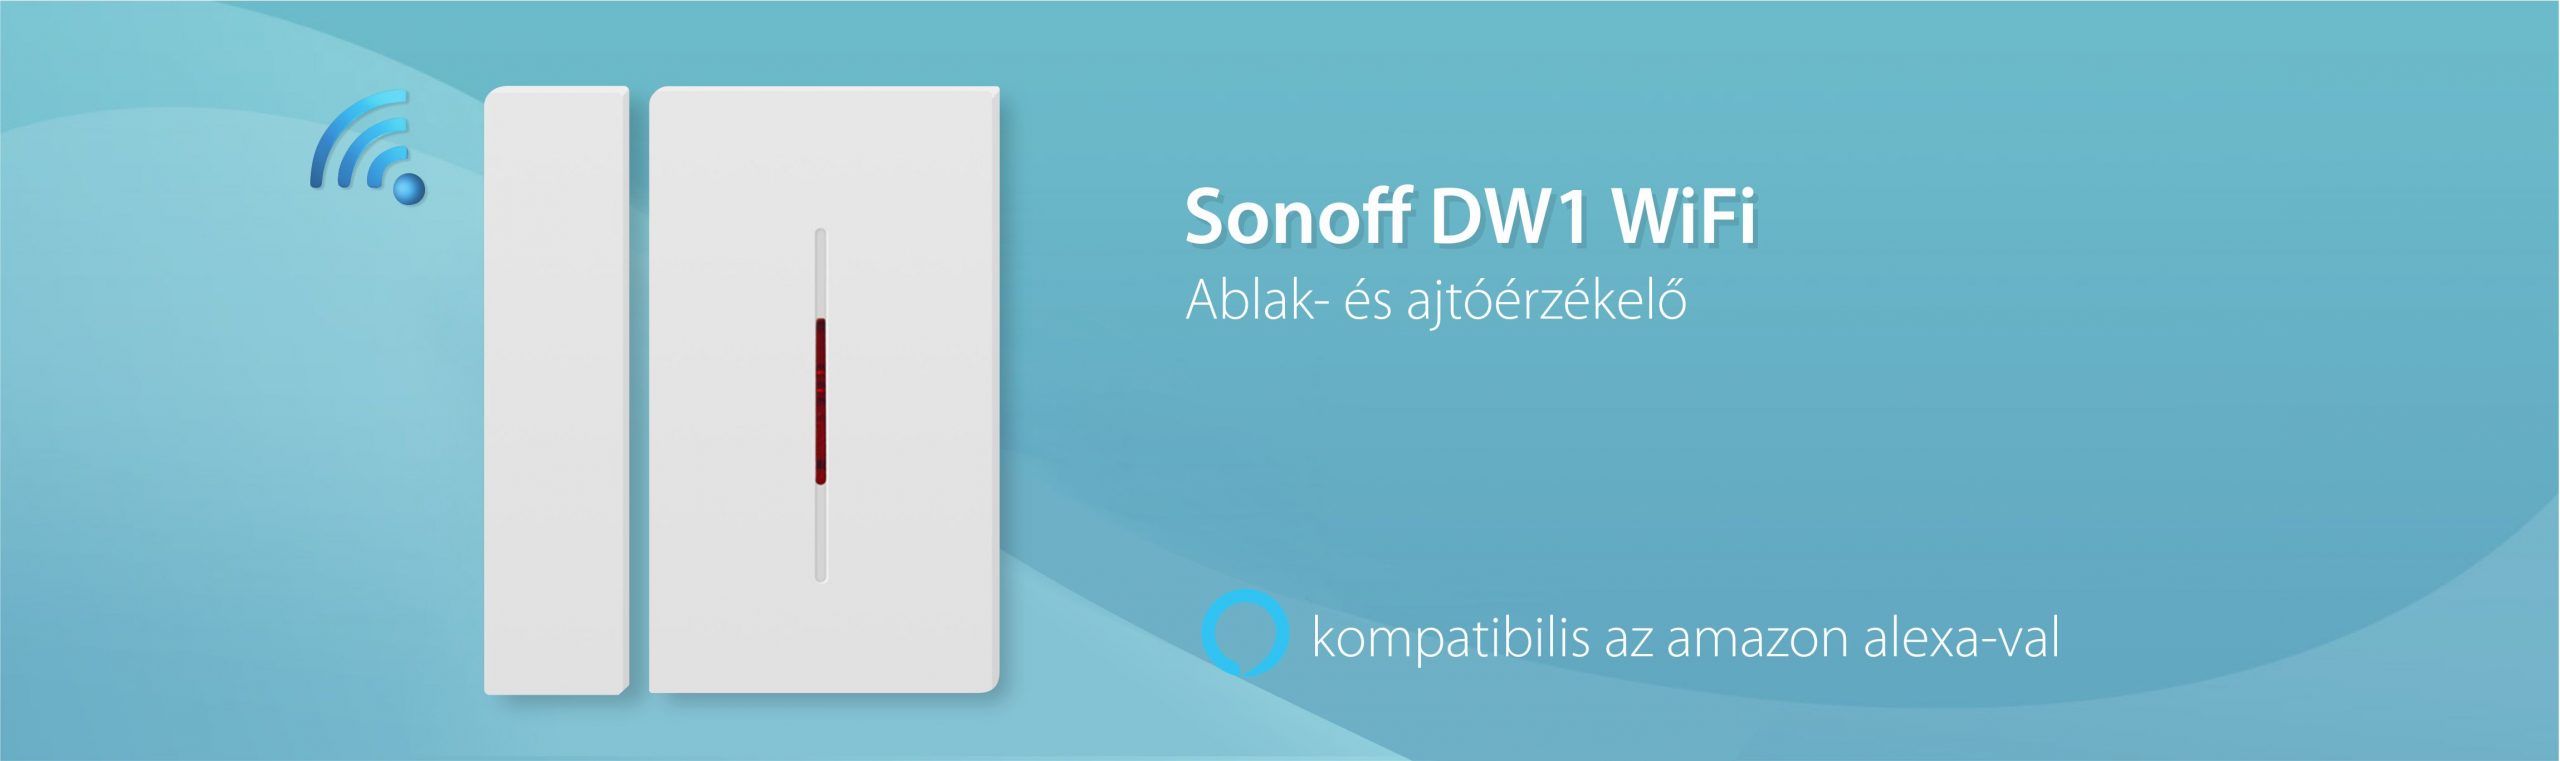 Sonoff Dw1 433 Mhz Ajtó és Ablakérzékelő Kompatibilis az RF Bridge-el